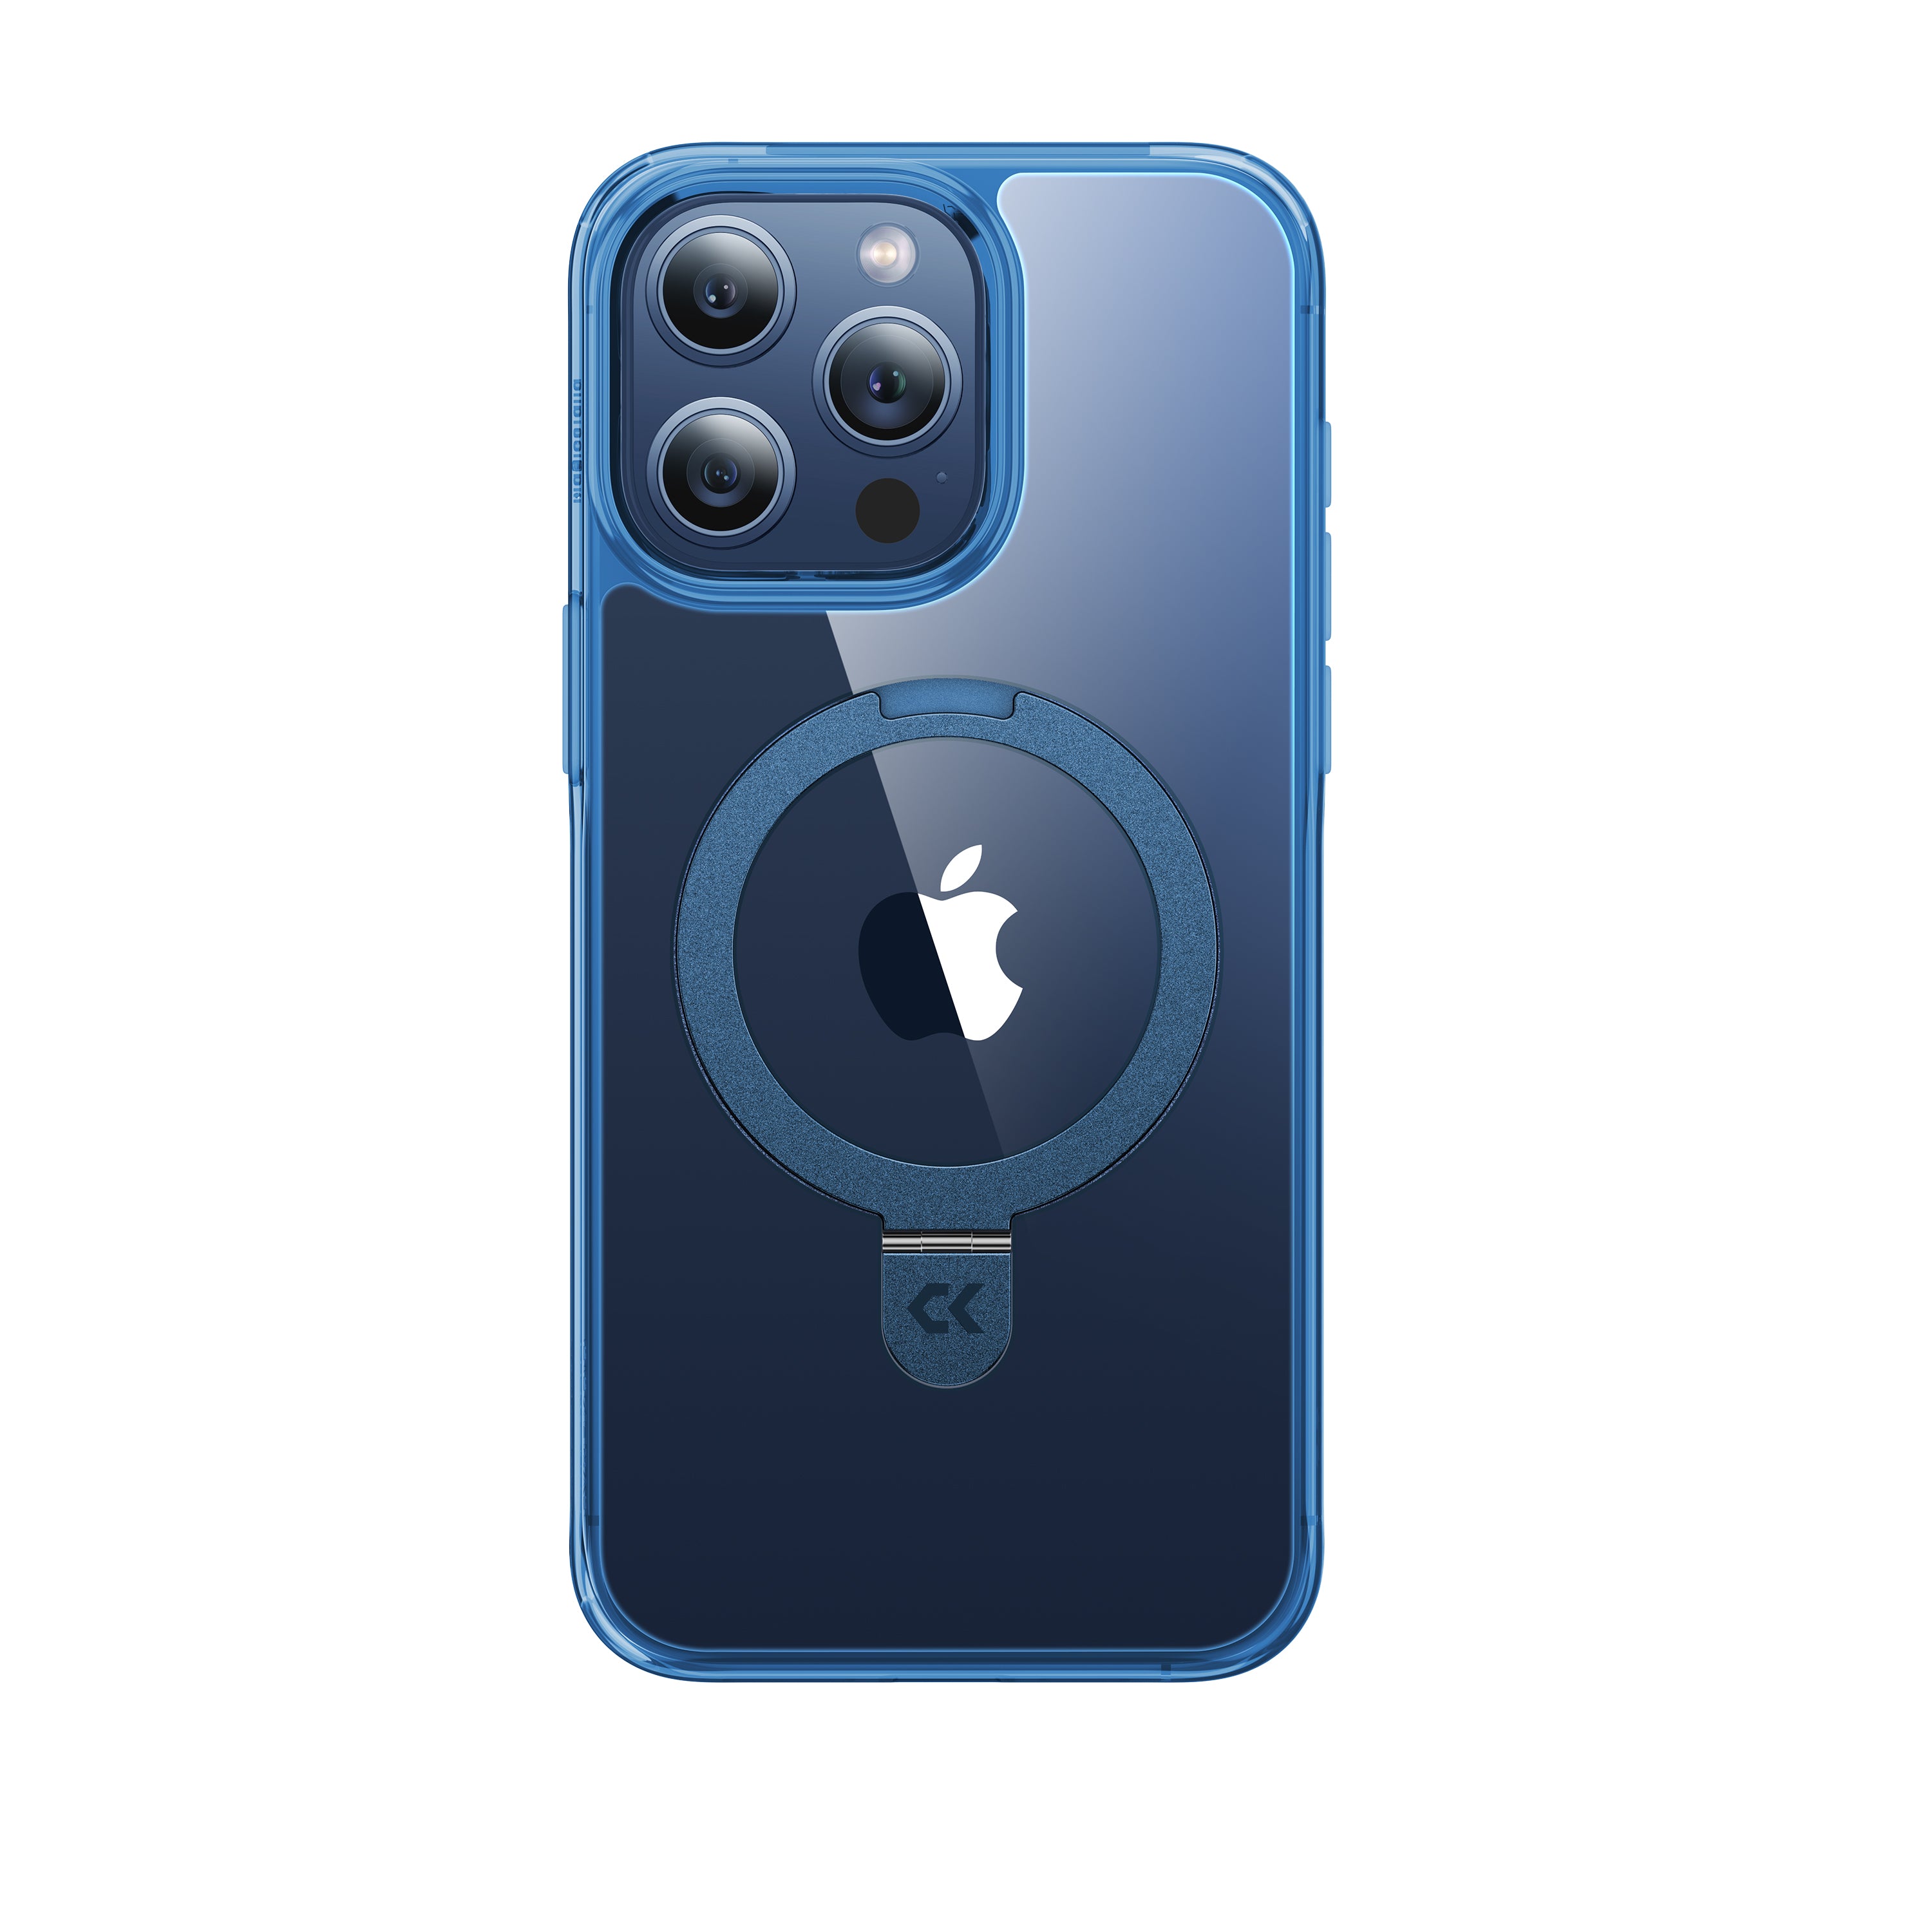 CASEKOO iPhone 黄ばみ防止クリア電話ケース 内蔵磁気キックスタンドと MagSafe 対応 - クリアロックシリーズ マジックスタンドバージョン